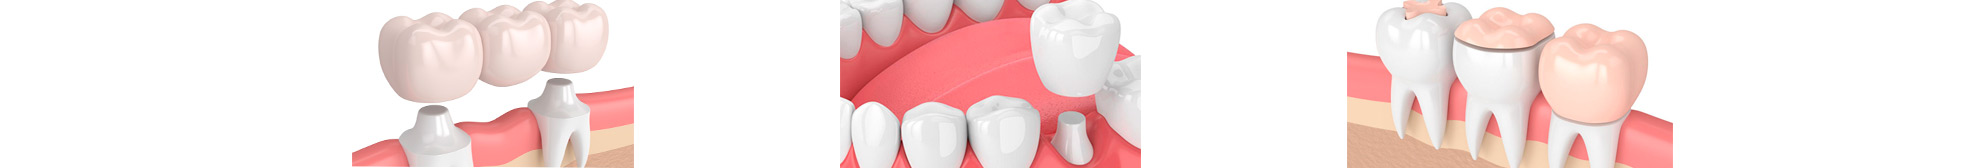 Протезирование - Клиника эстетической стоматологии 